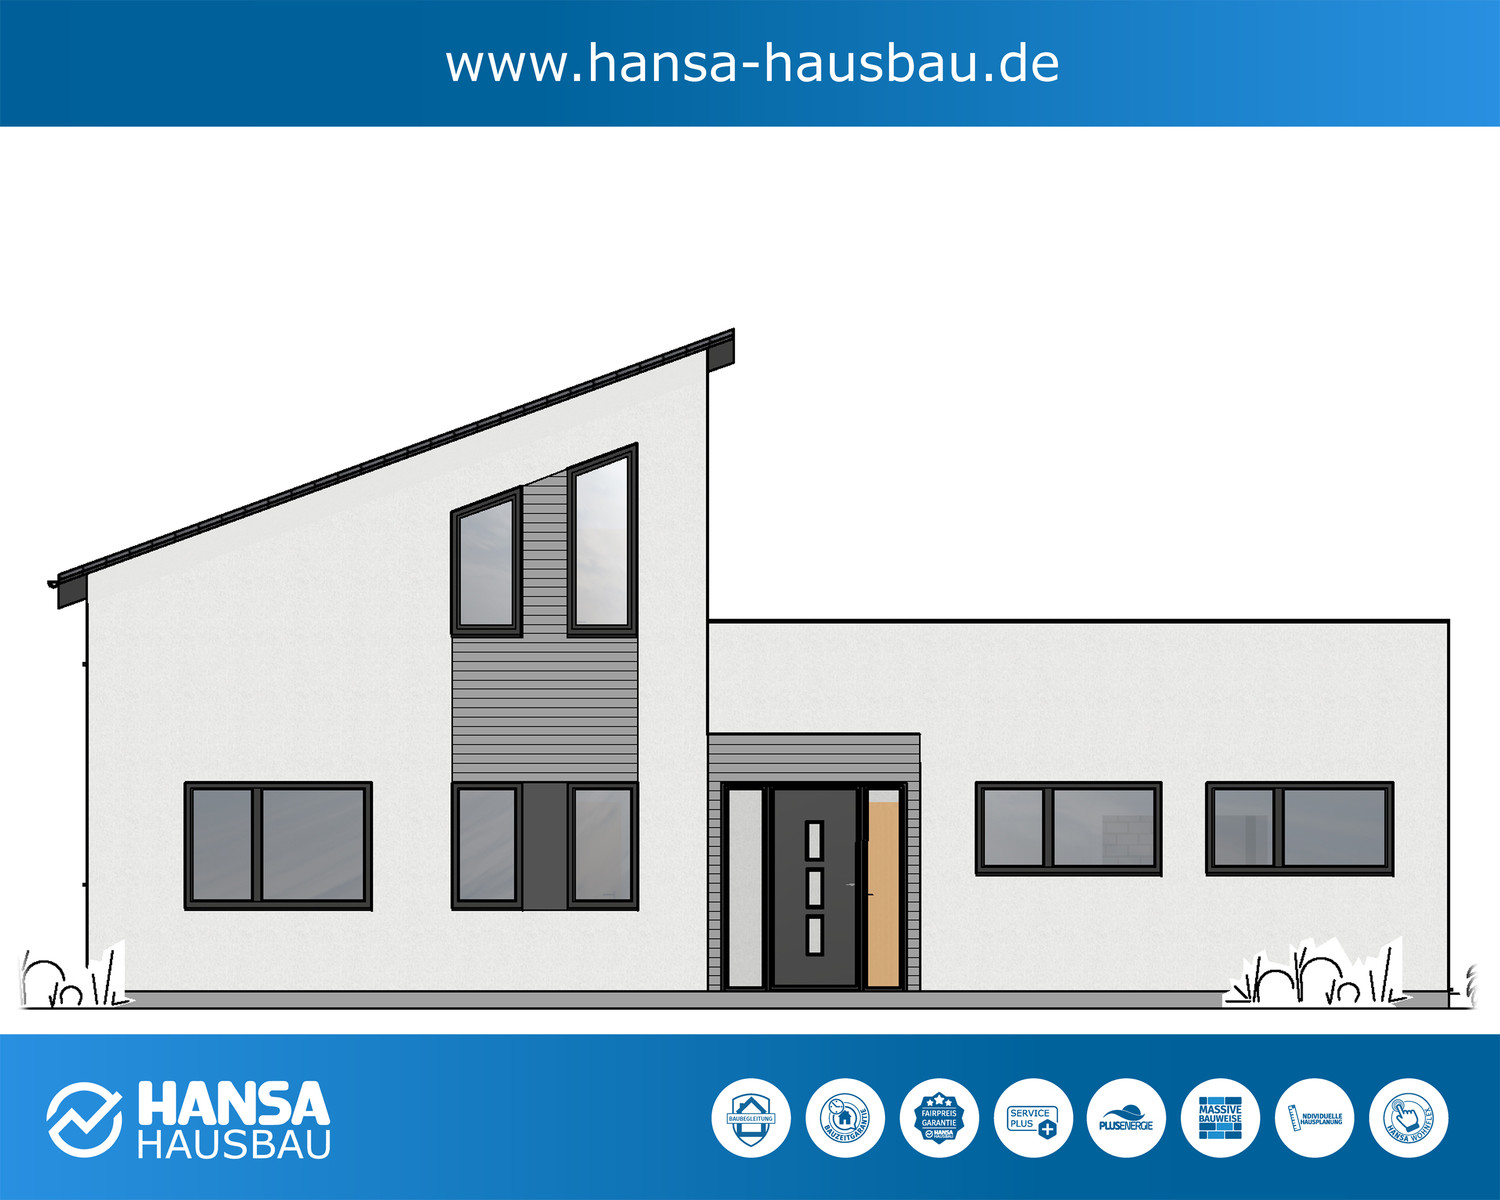 Hansa Hausbau Bauplanung Architektenhaus